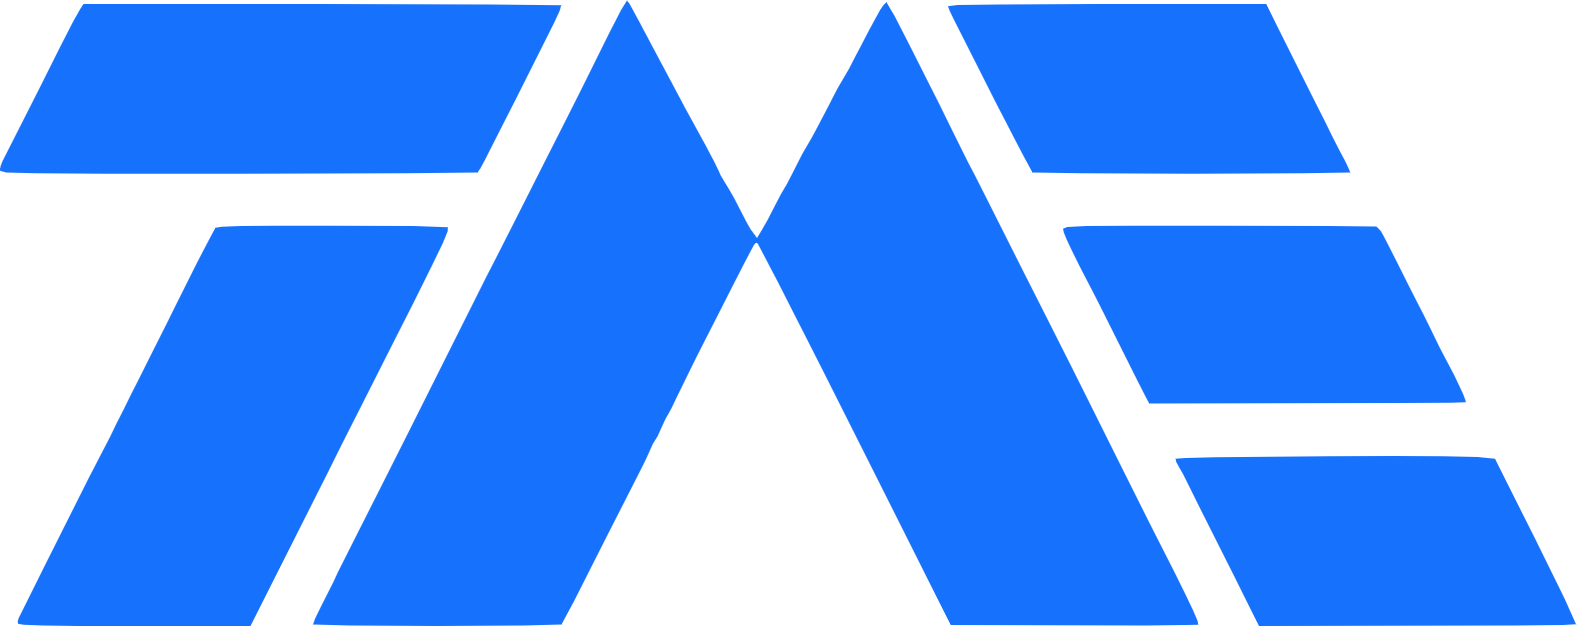 Tencent Music logo (PNG transparent)